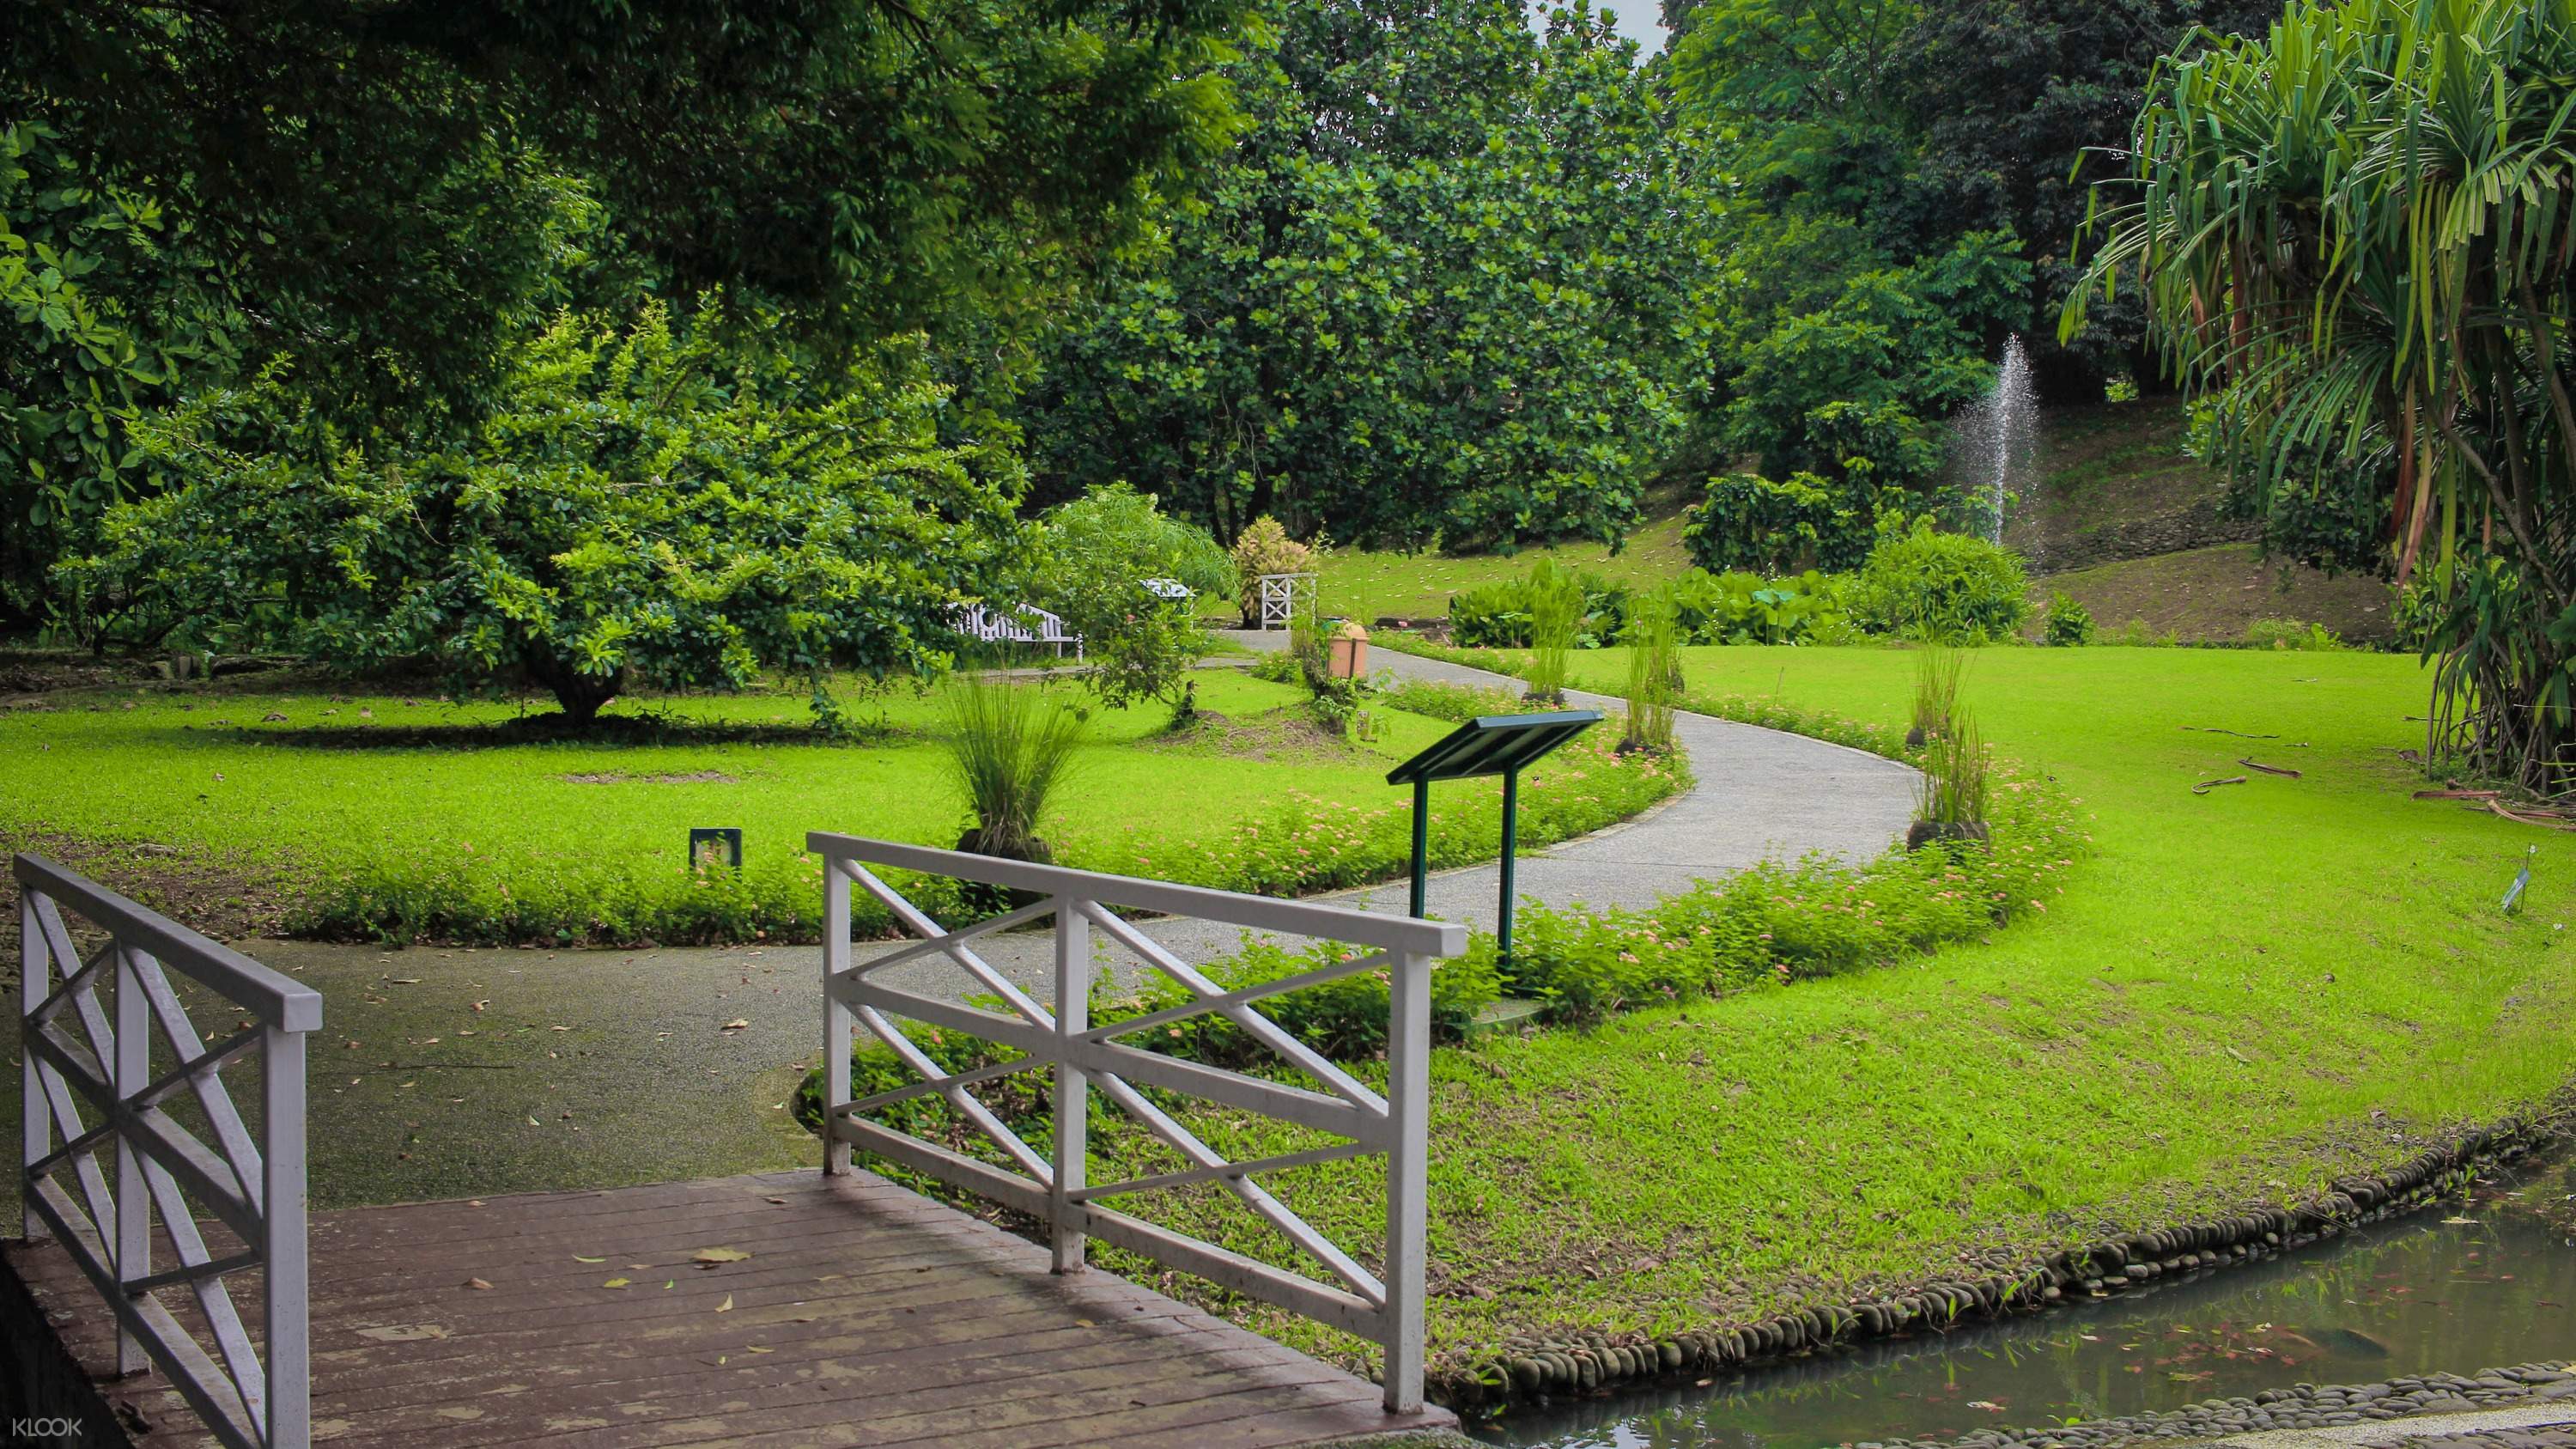 Kebun Raya Bogor Ticket